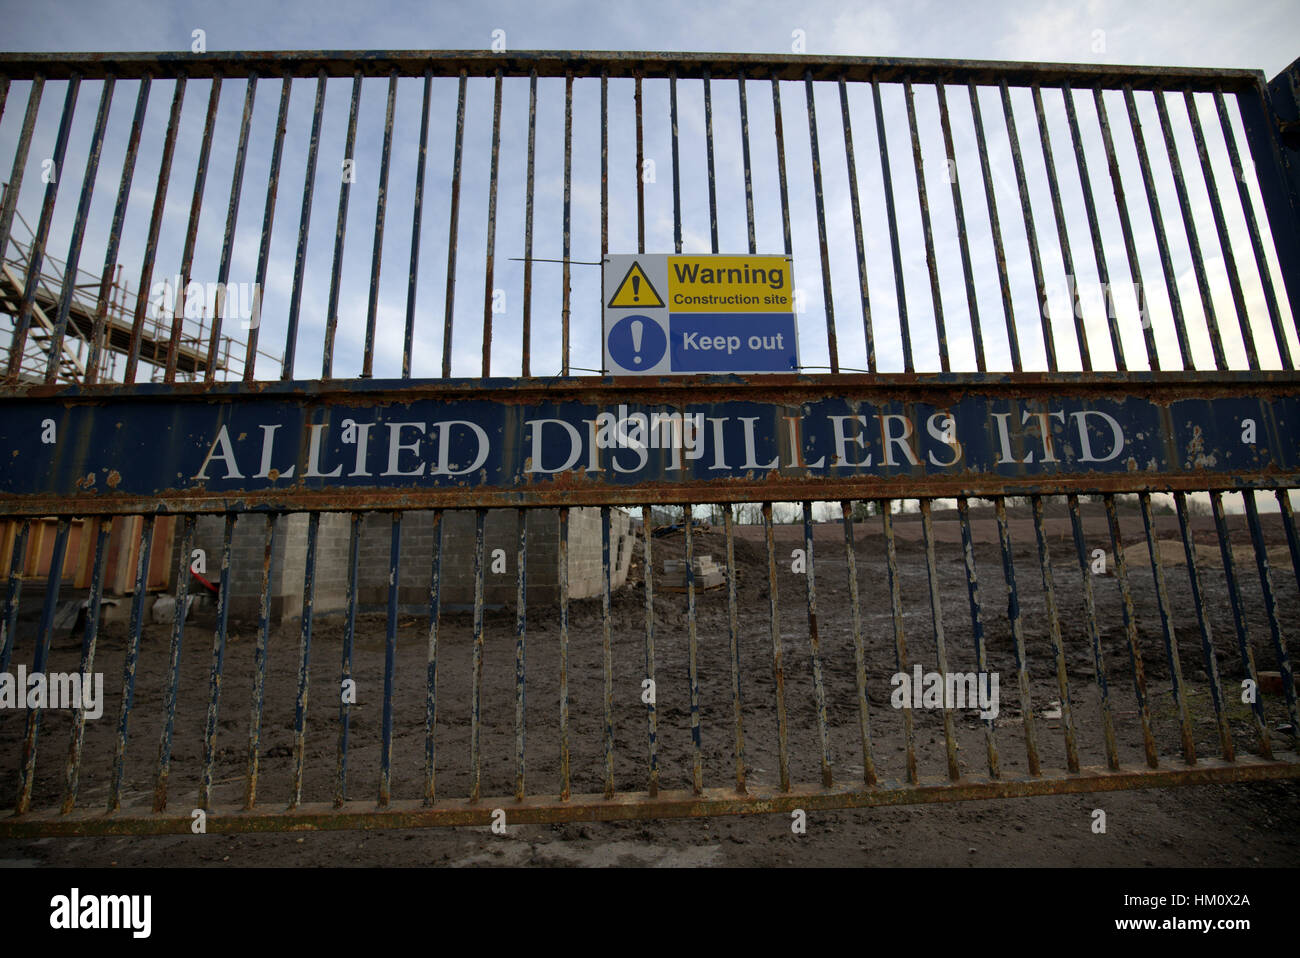 Vieux whiskey allied distillers portes locaux maintenant un site de construction Banque D'Images